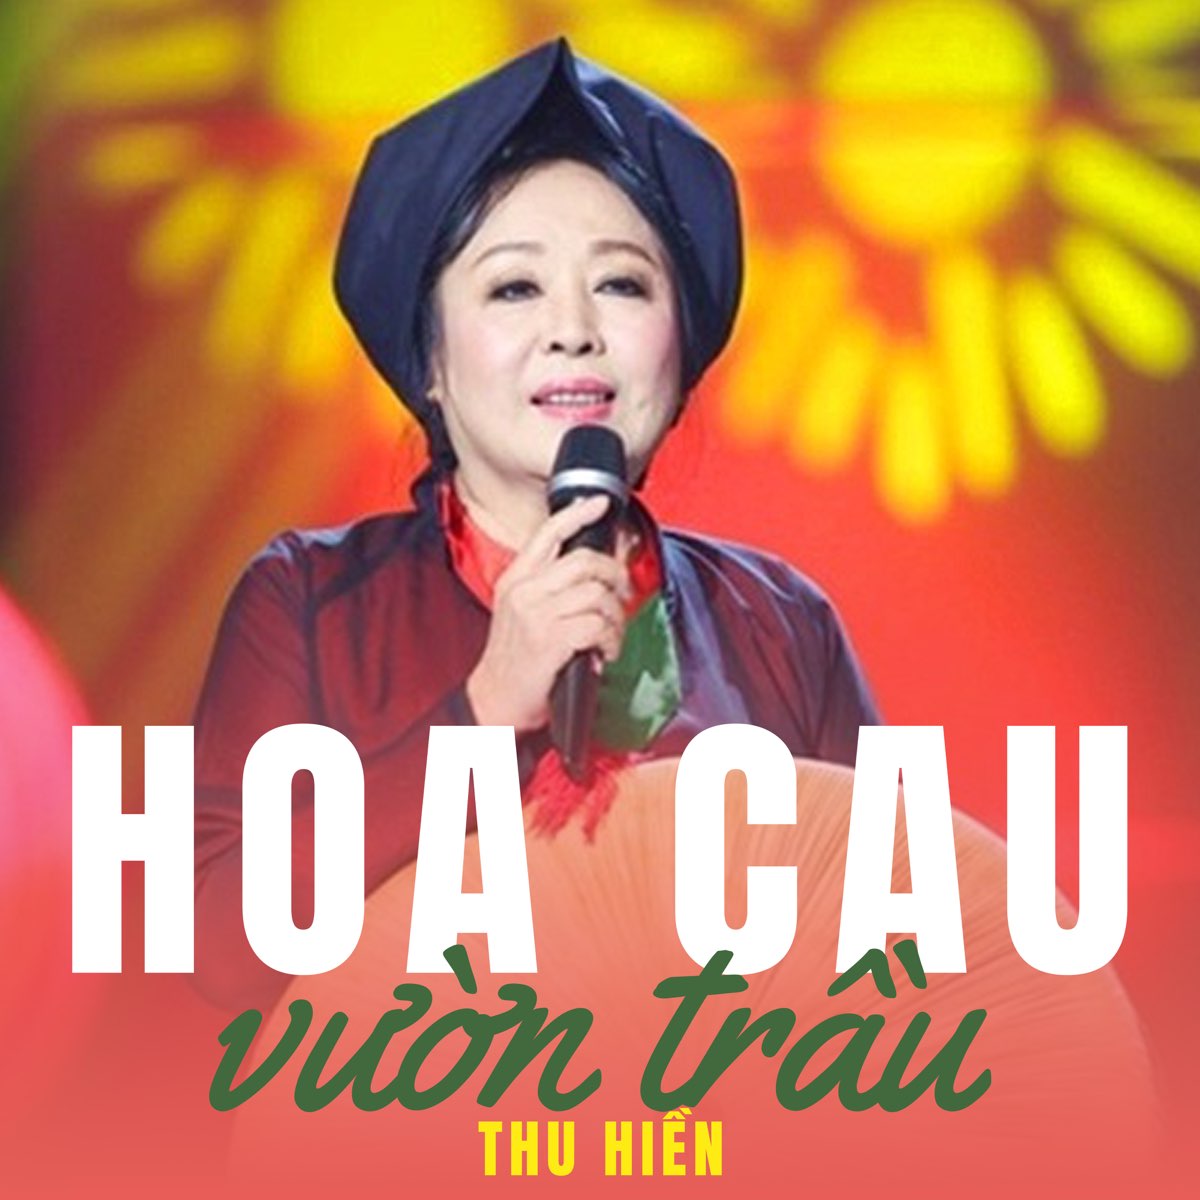 ‎Hoa Cau Vườn Trầu - Album by Thu Hien - Apple Music